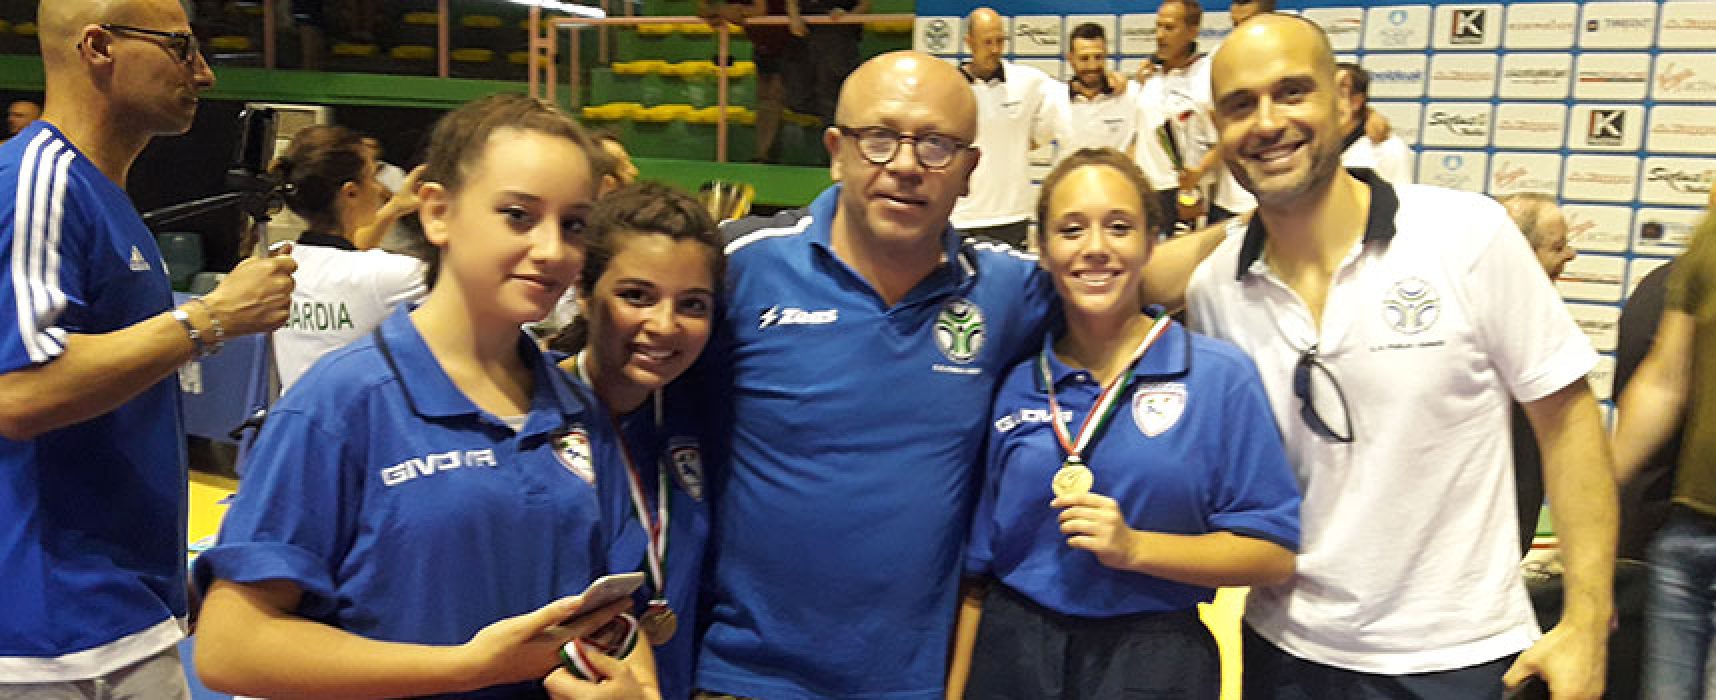 Laura Dell’Olio conquista il bronzo ai Campionati Italiani a squadre di karate